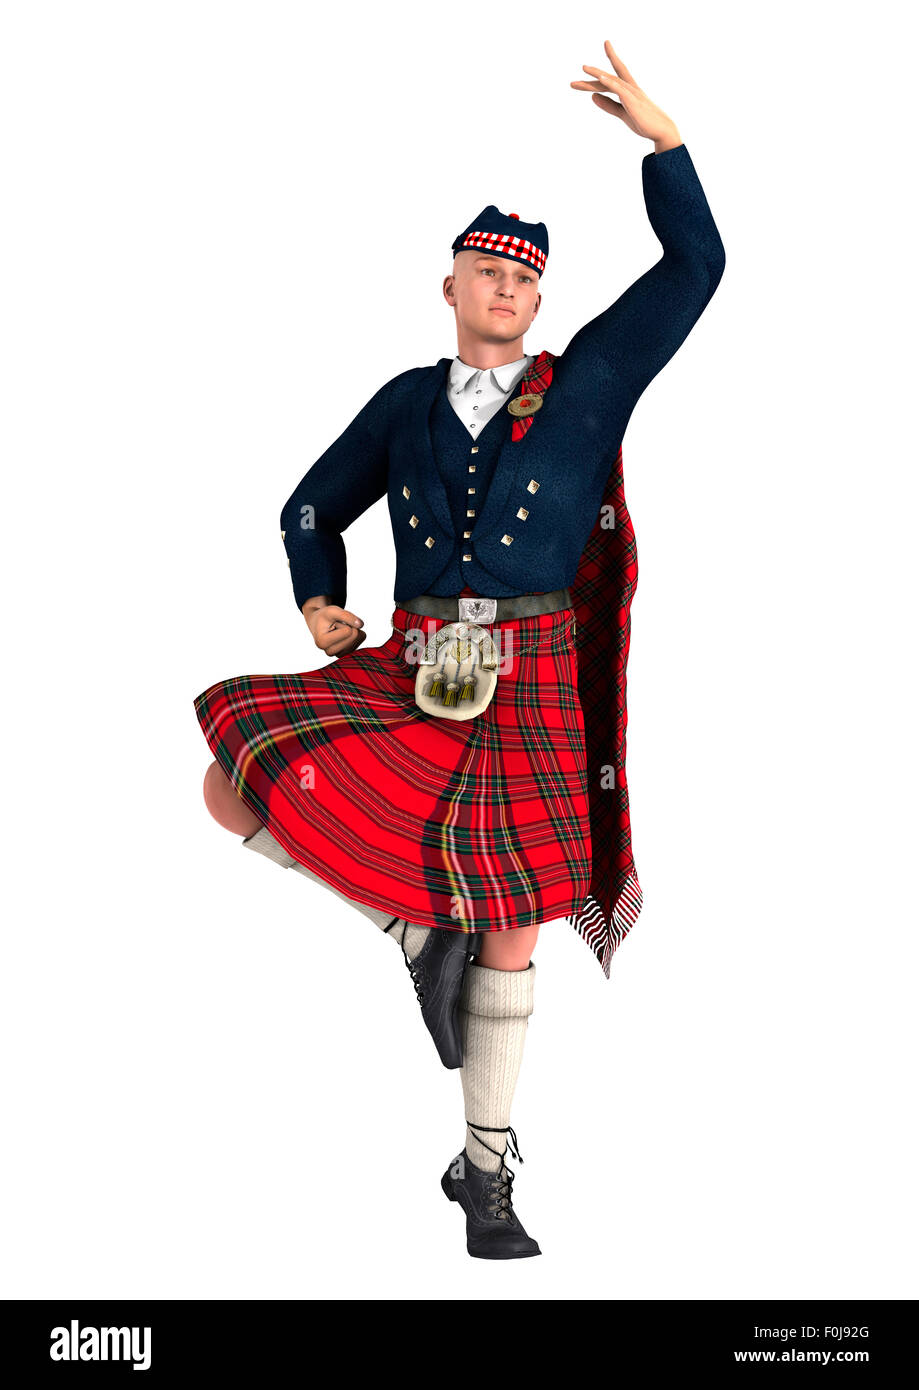 Numérique 3D render of a highlander vêtu d'un kilt écossais dancing isolé sur fond blanc Banque D'Images